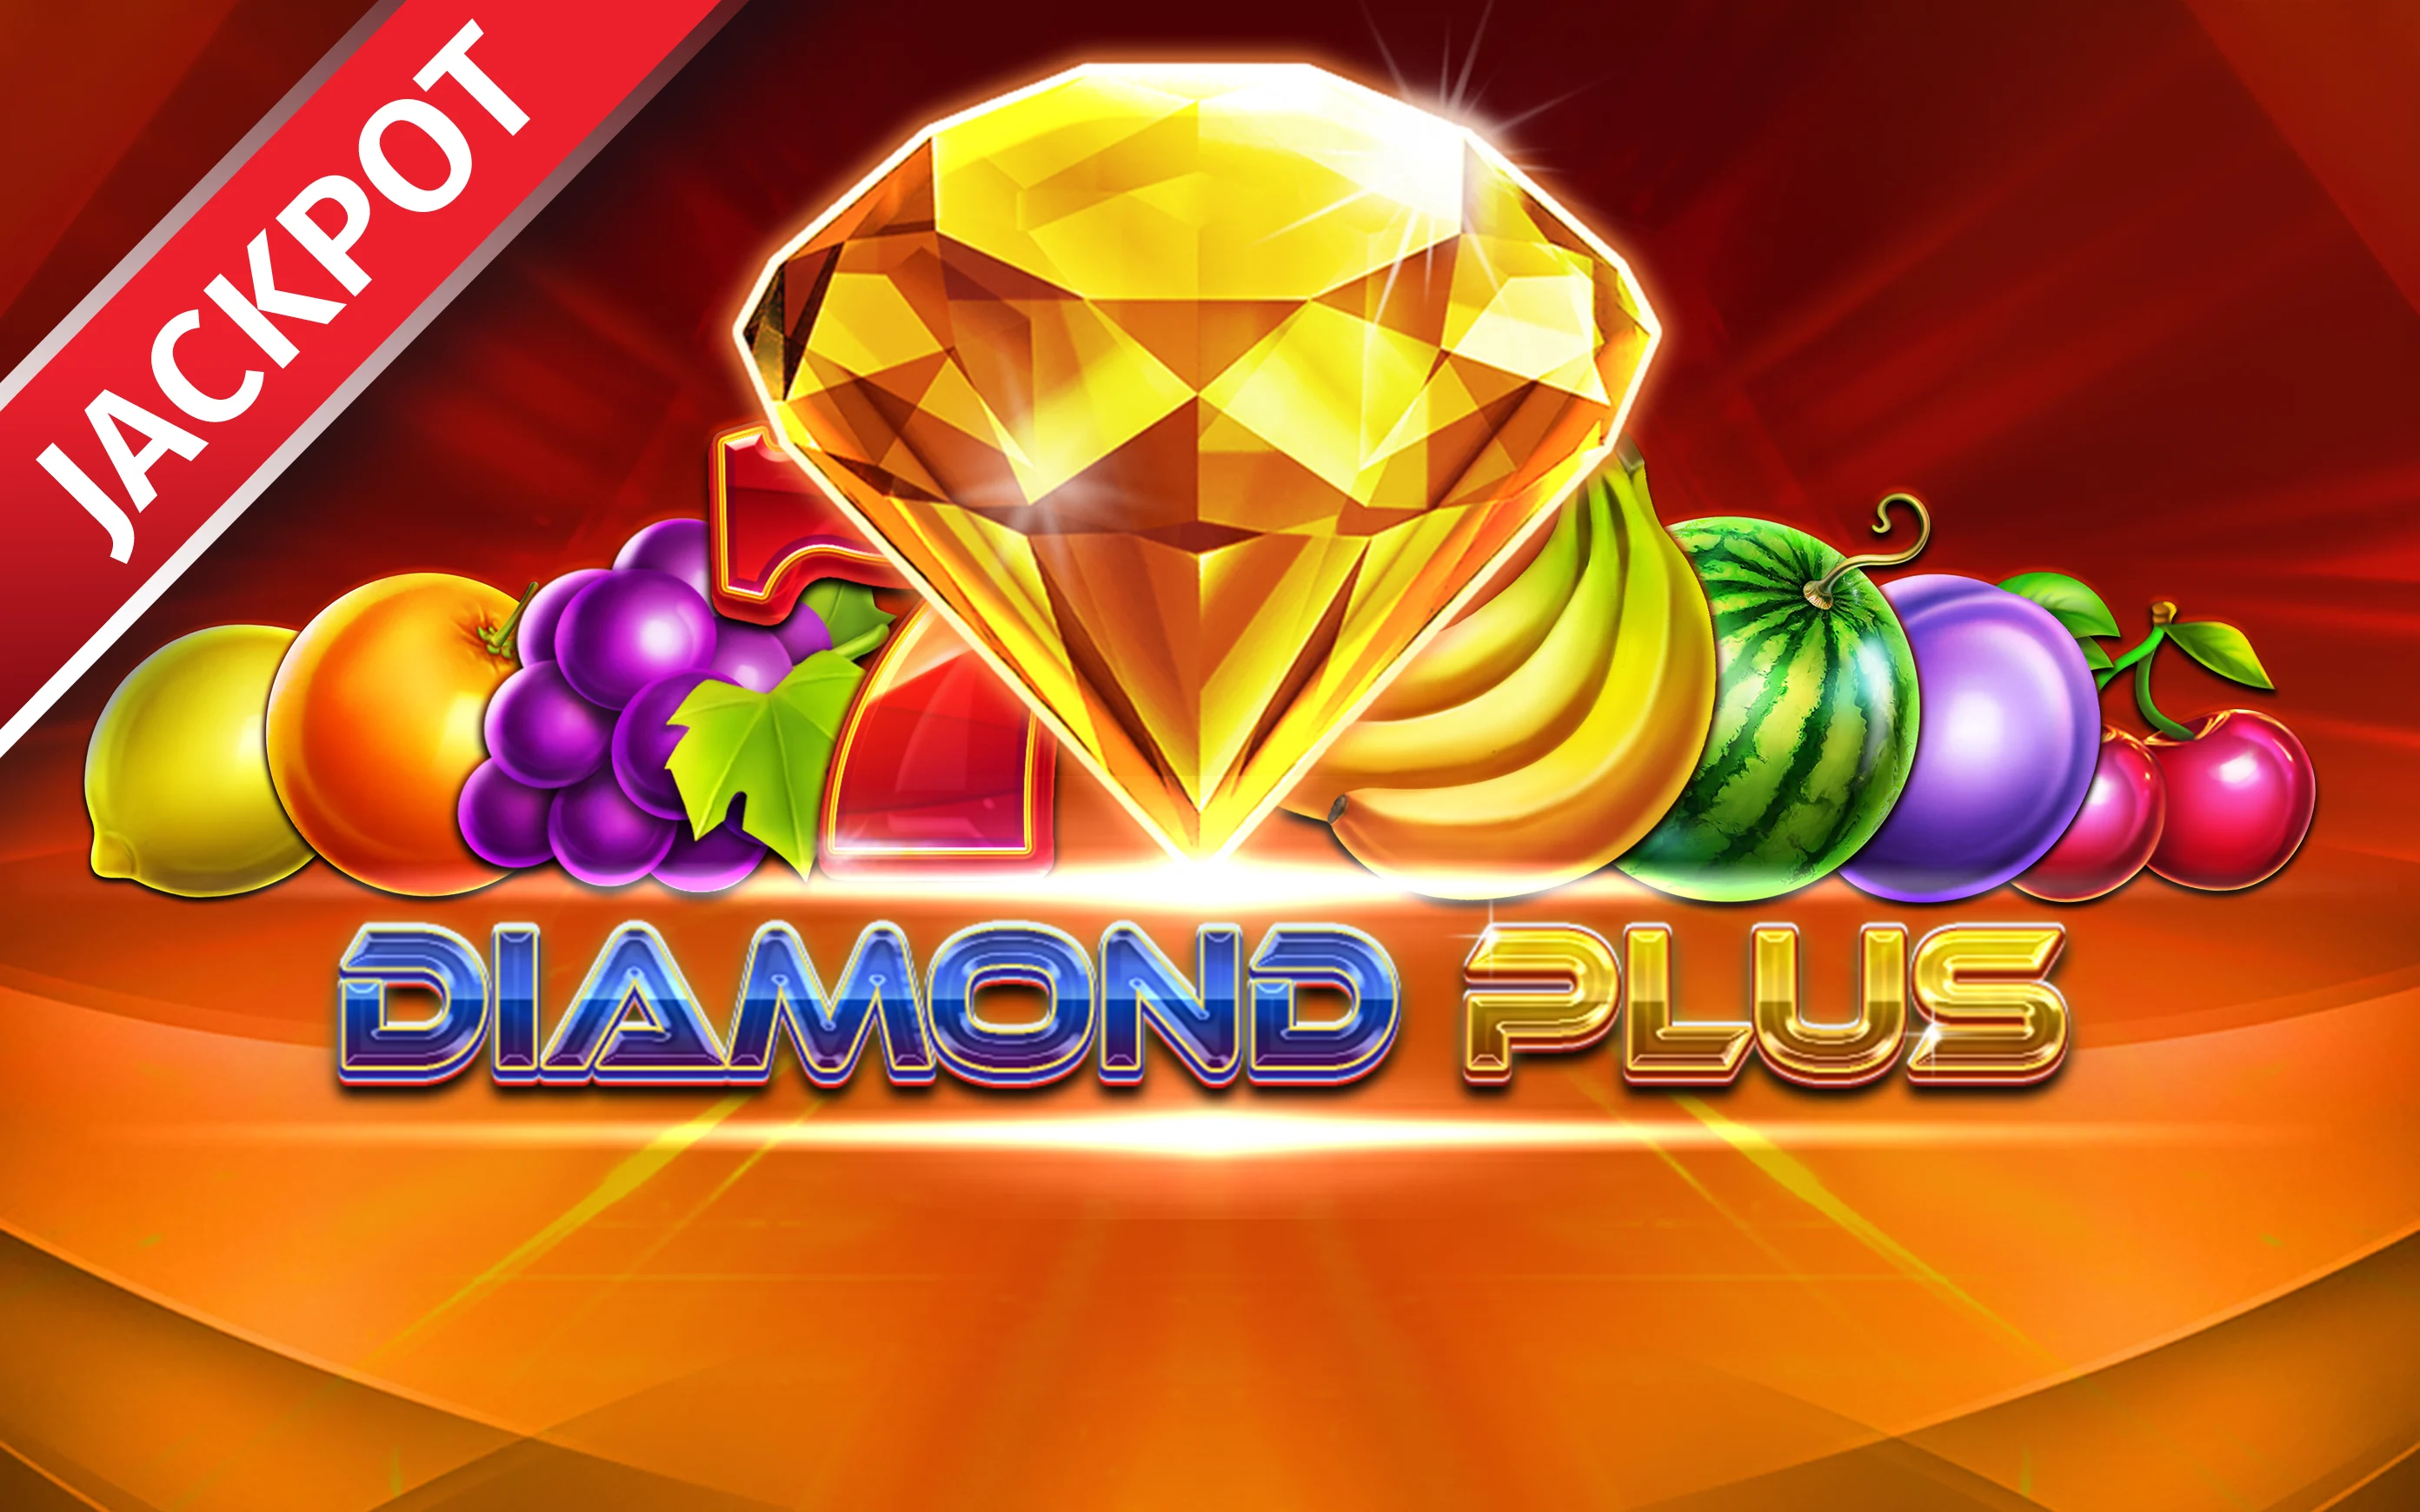 Juega a Diamond Plus en el casino en línea de Starcasino.be